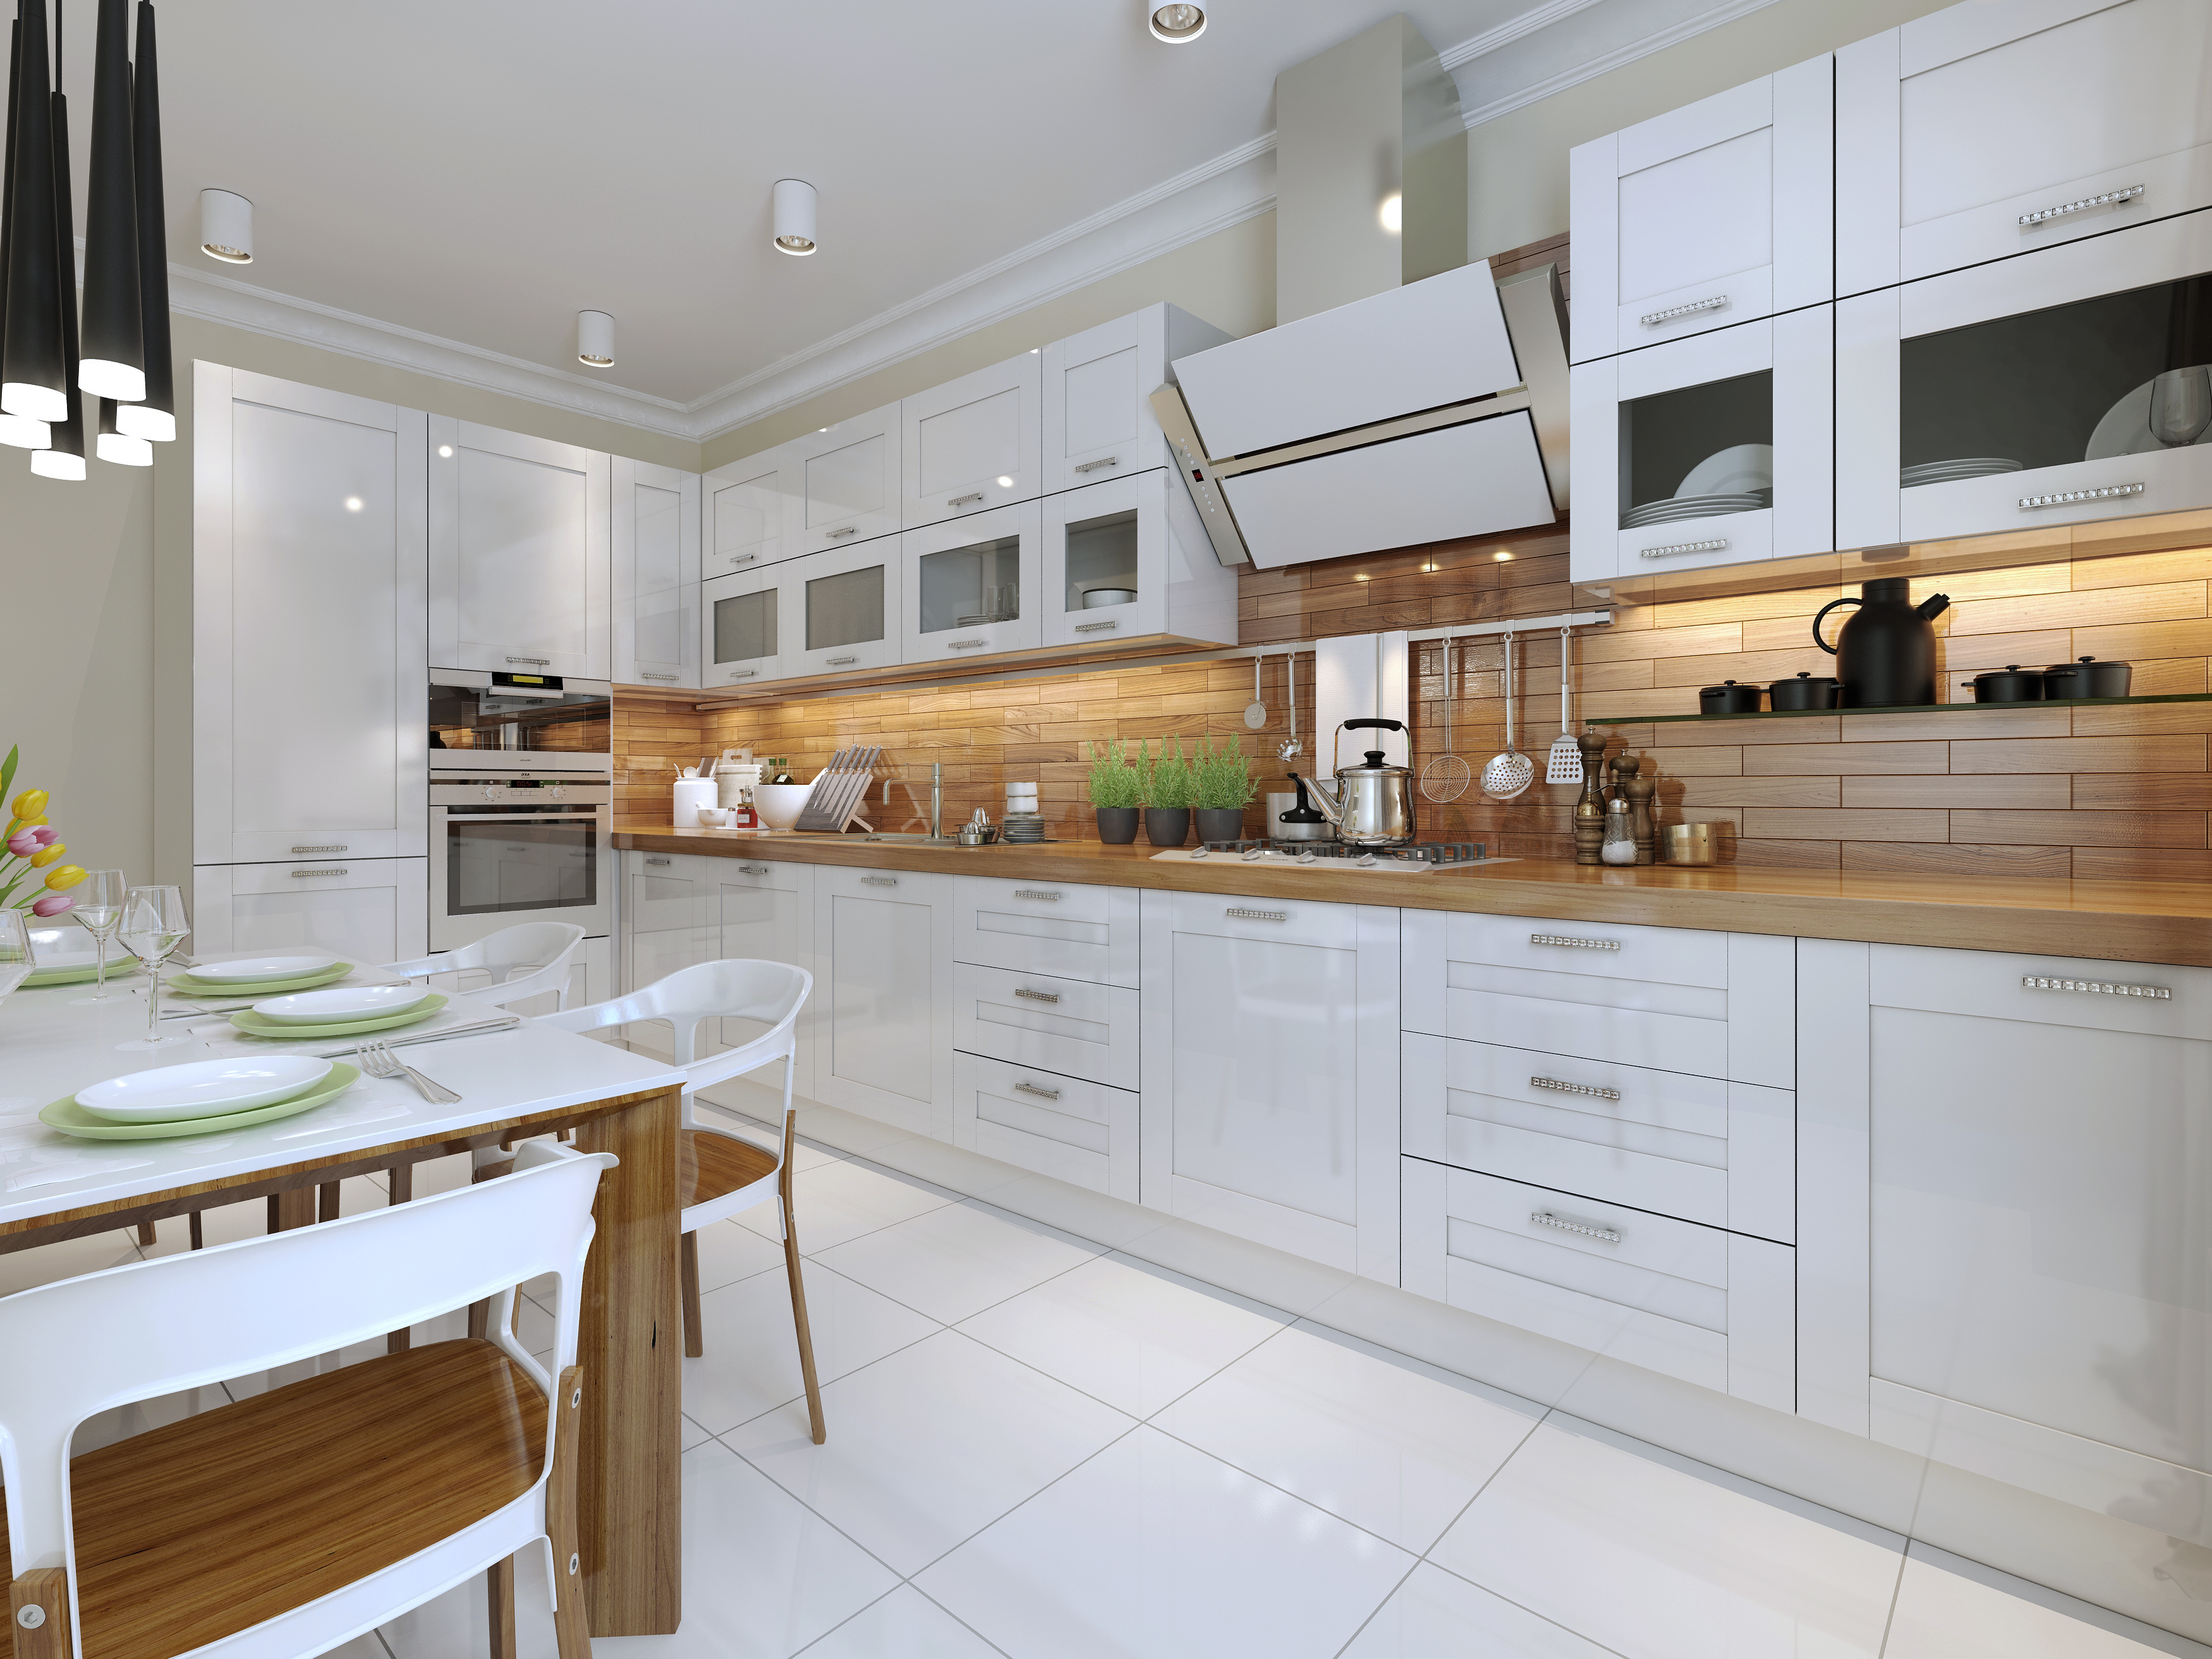 Classic Kitchens,Classic Kitchen Design, Period Kitchen Design 